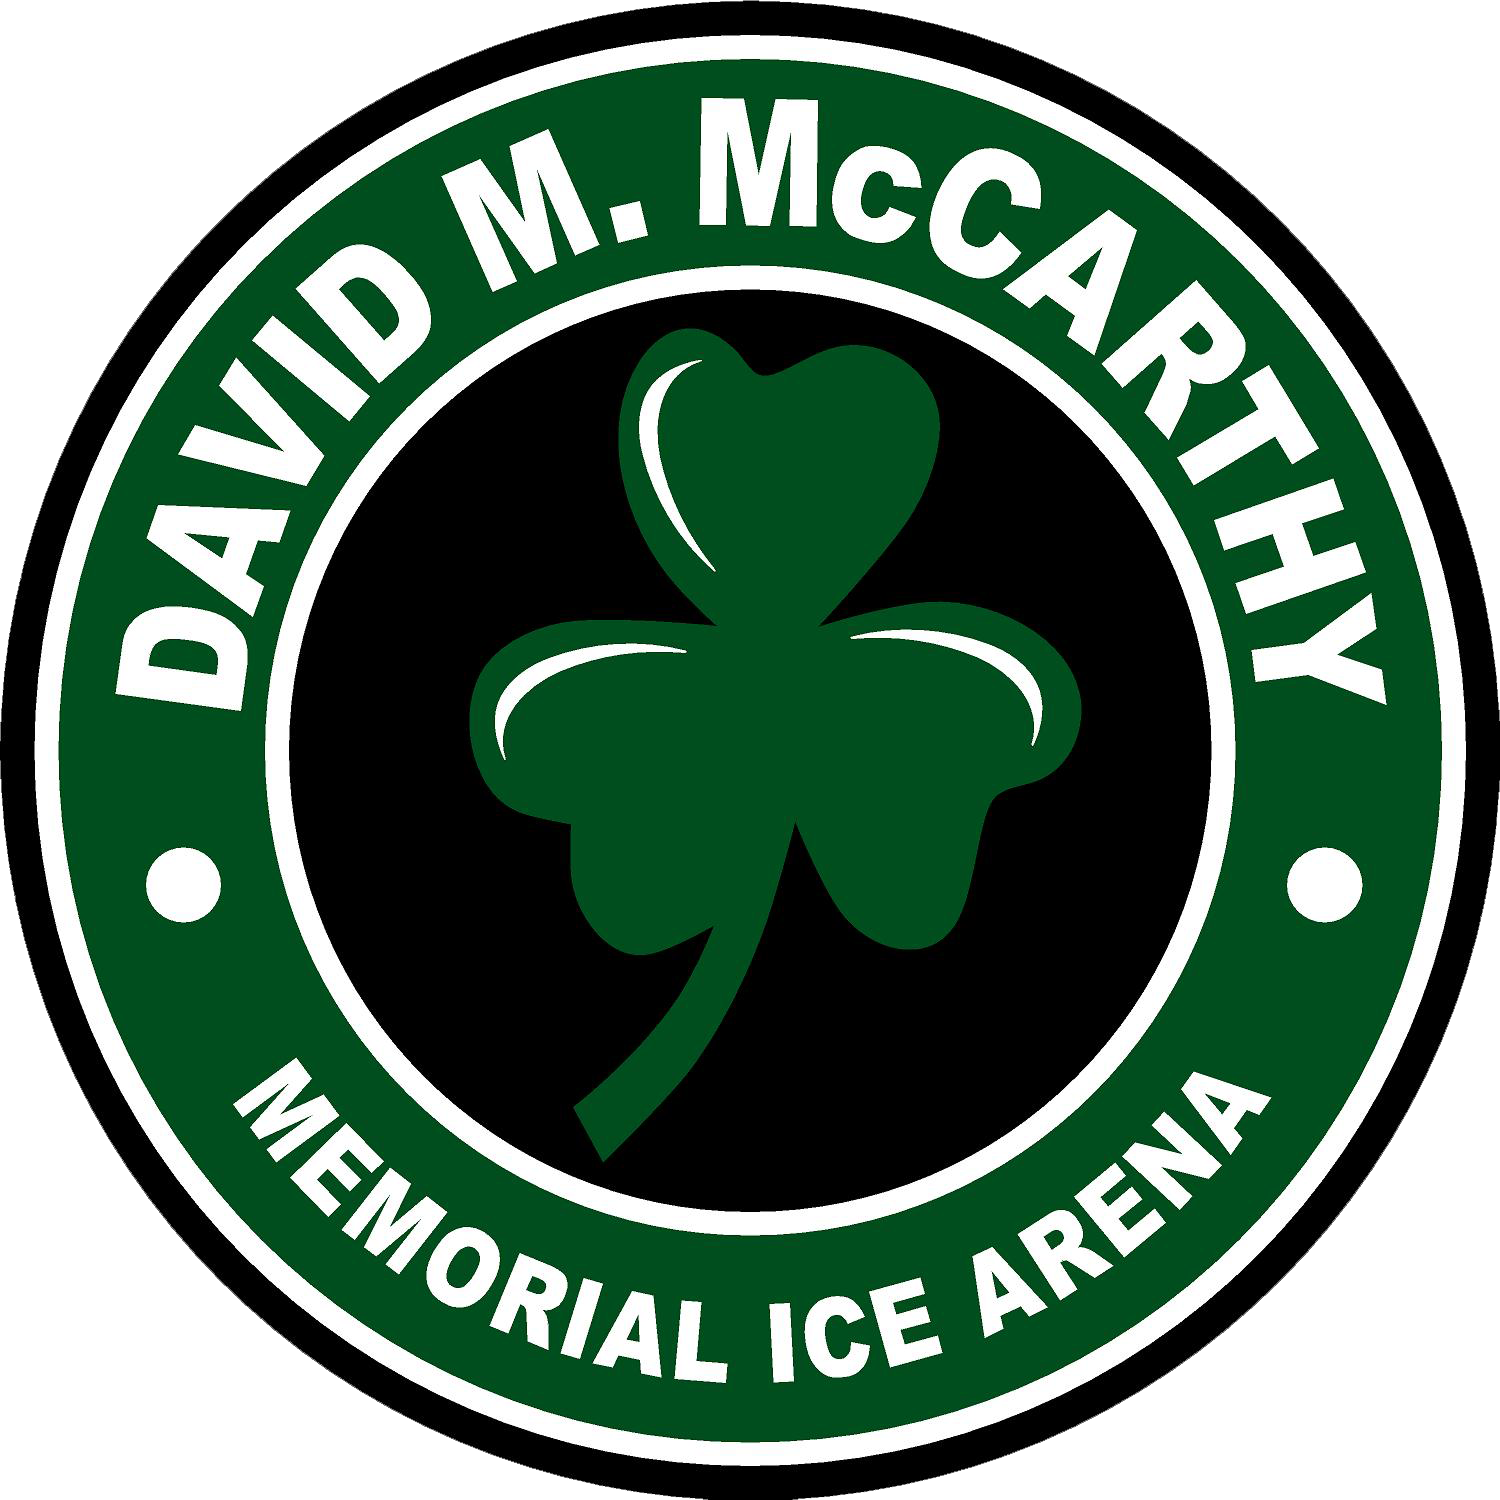 David M. McCarthy Memorial Ice Arena